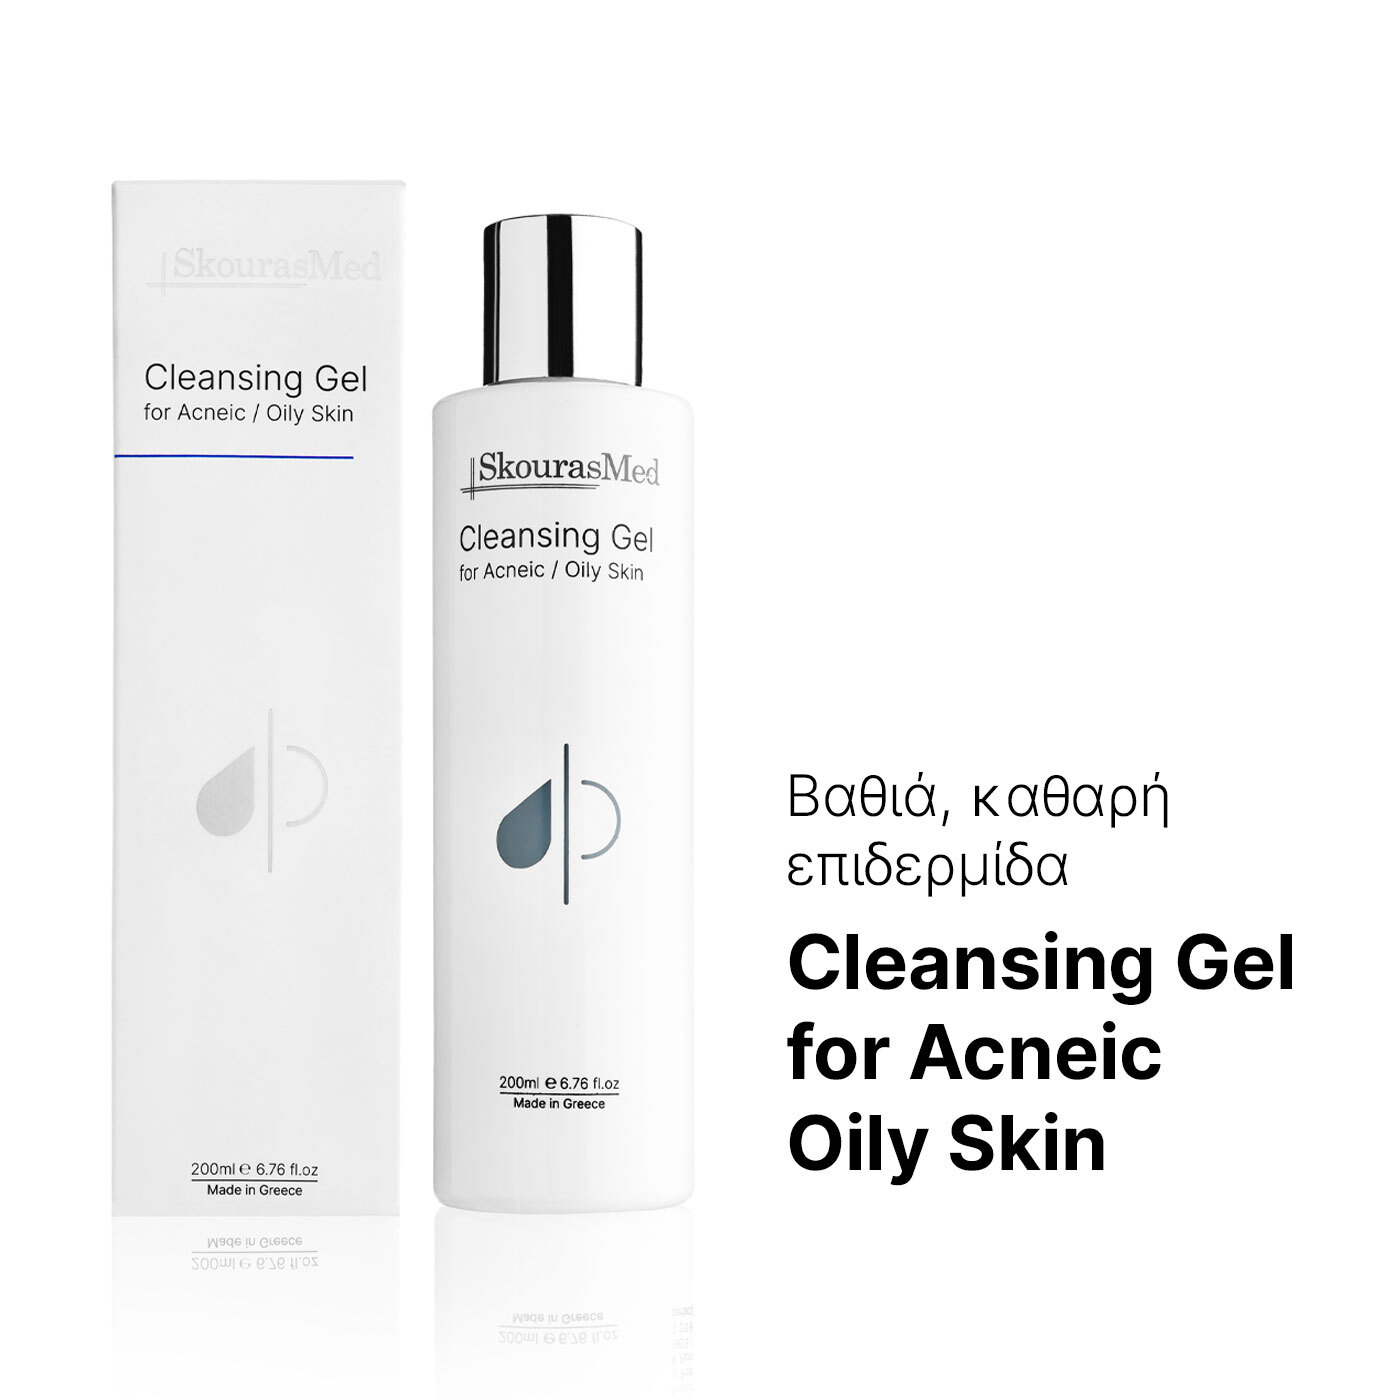 SkourasMed Cleansing Gel for Acneic / Oily Skin